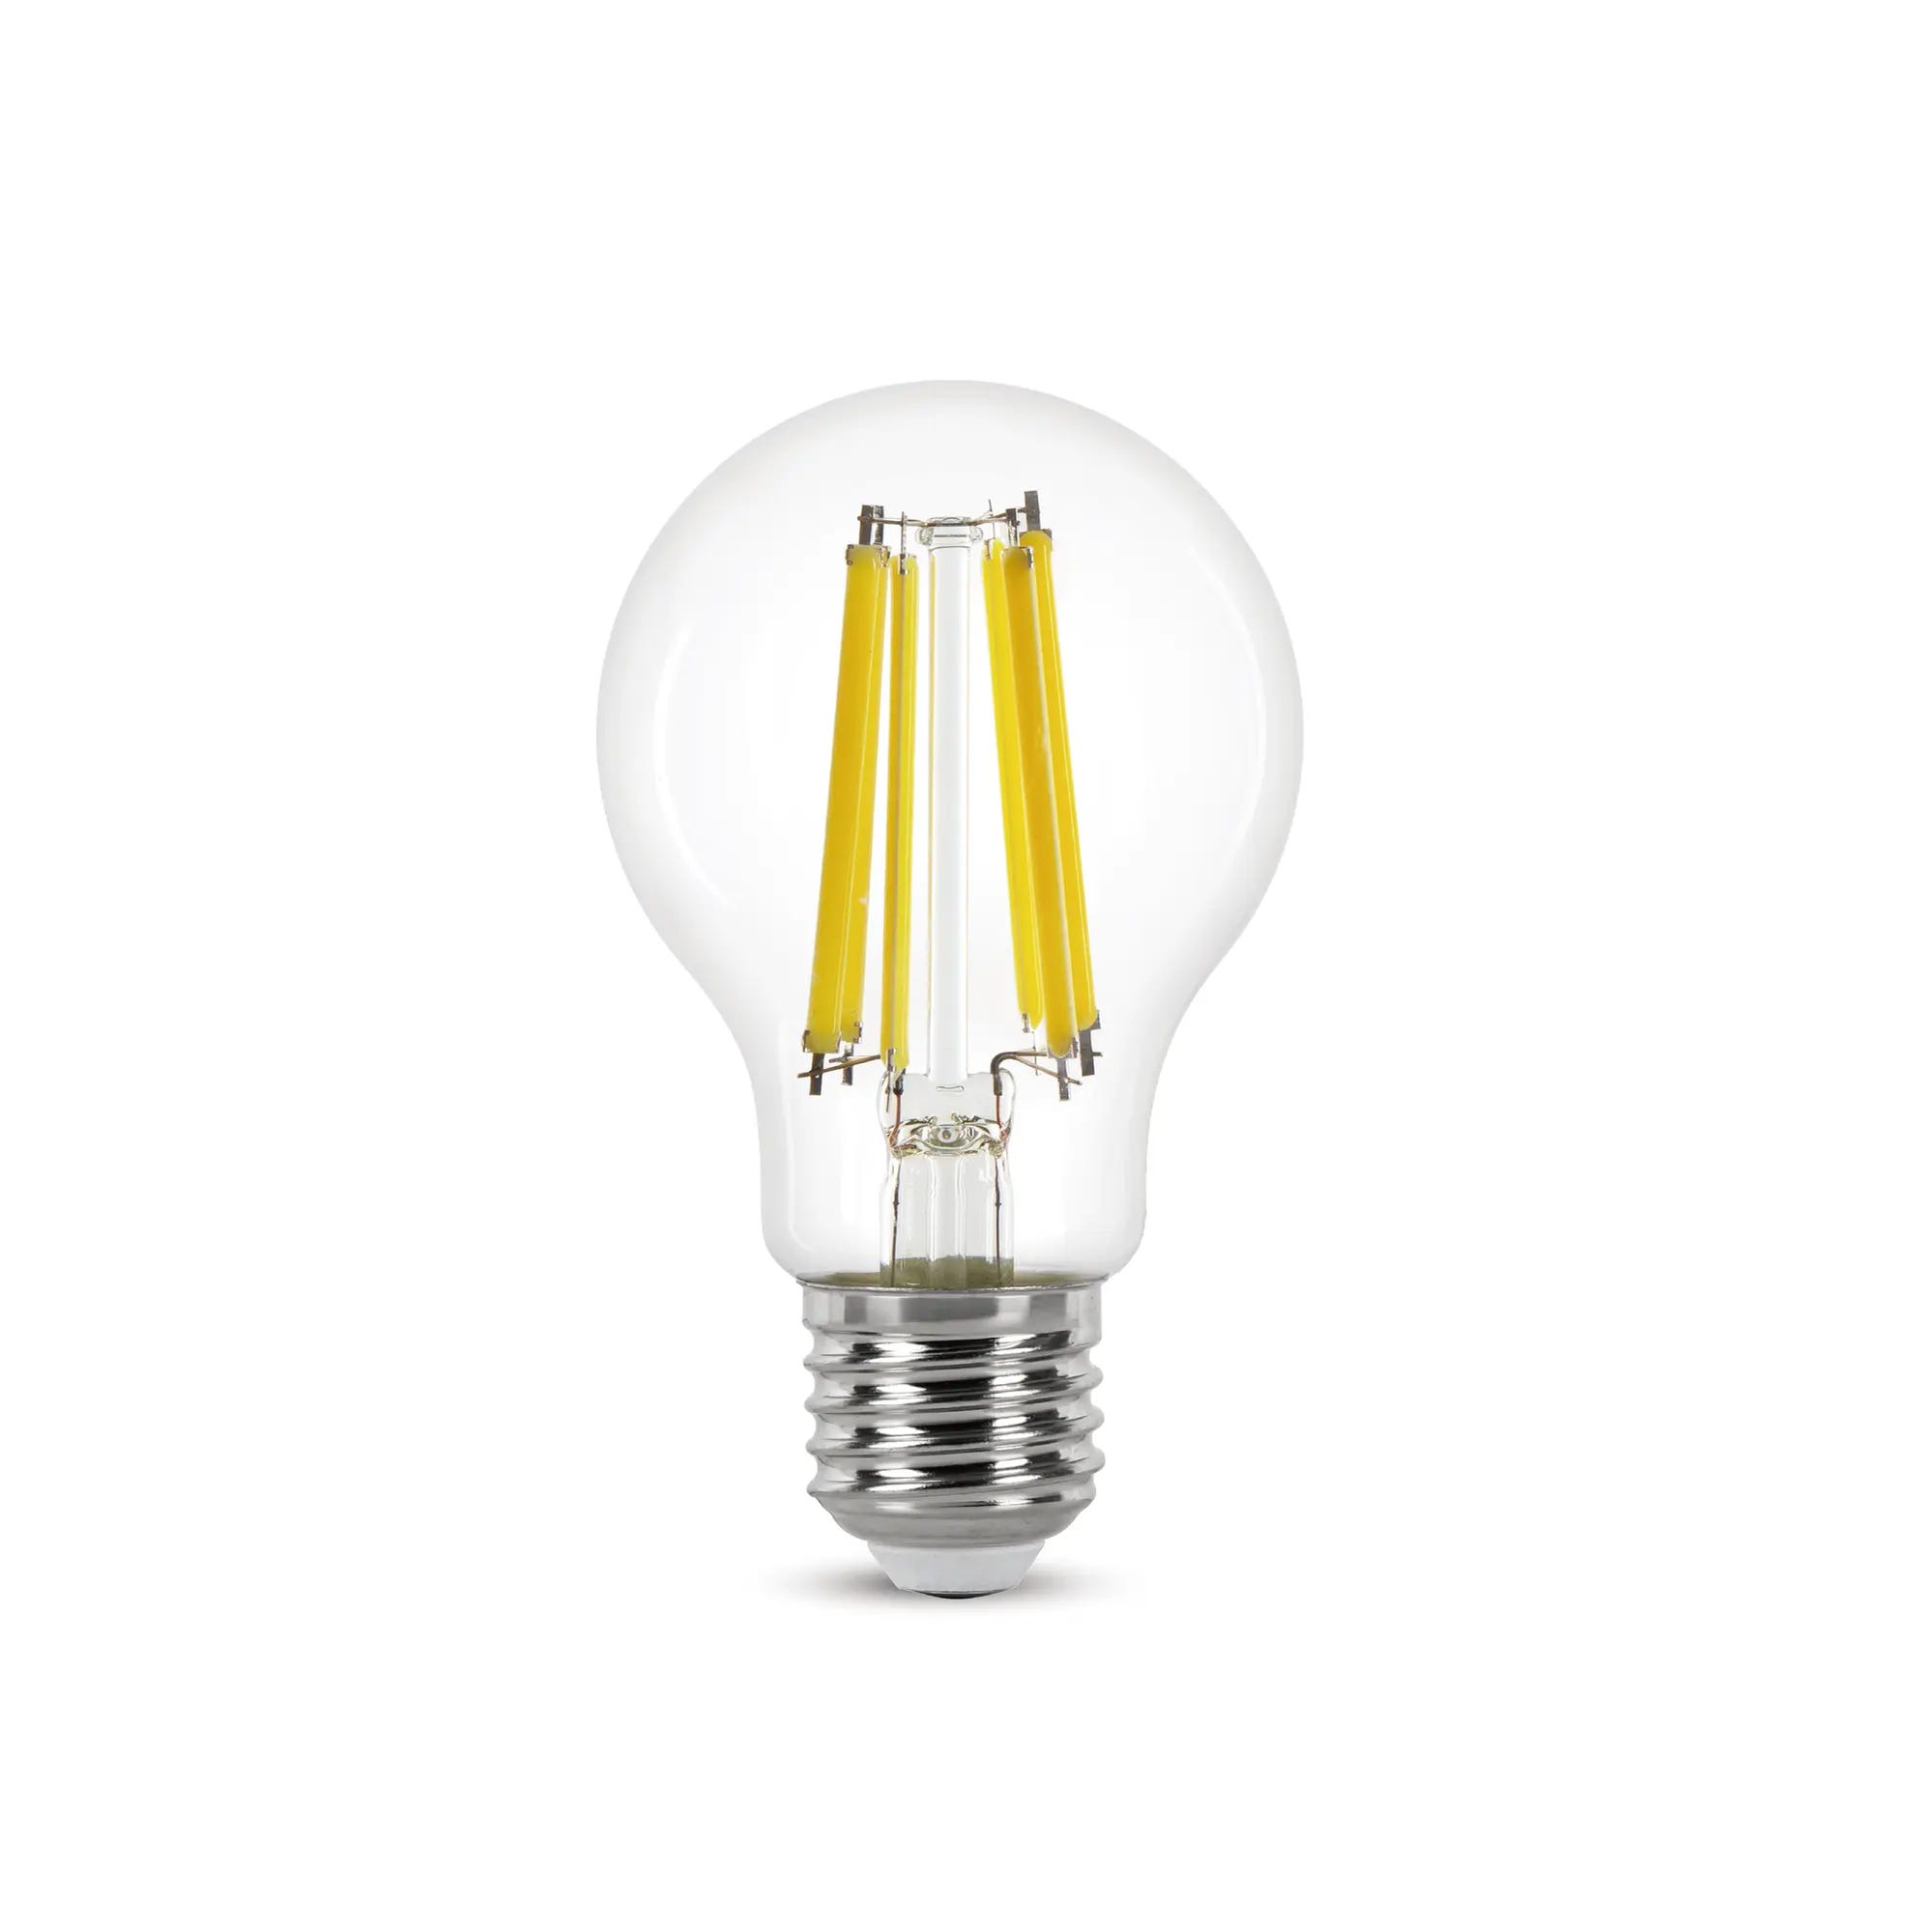 Lampadina economica, lampadina a LED E14 12W in vendita, lampada